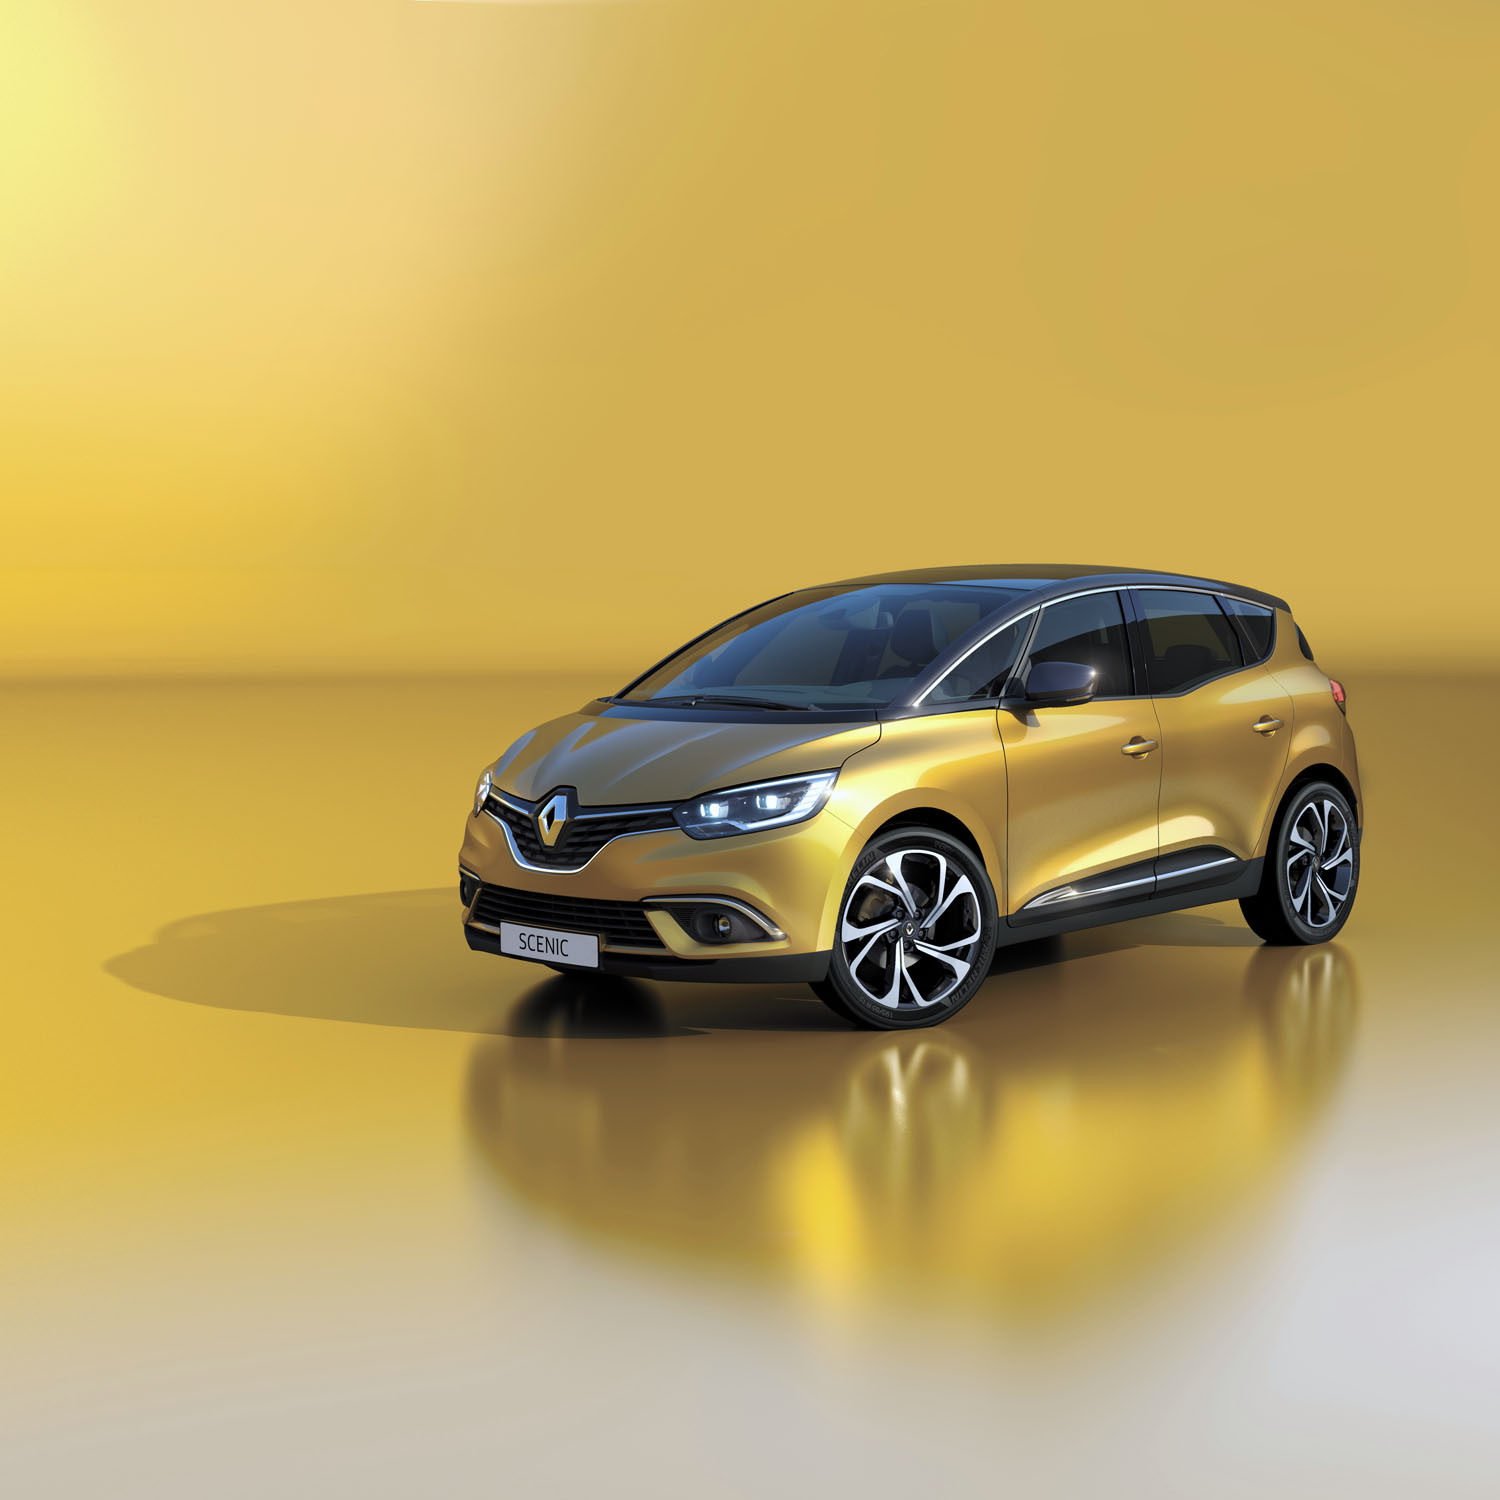 Prapremiera nowego Renault Scenic